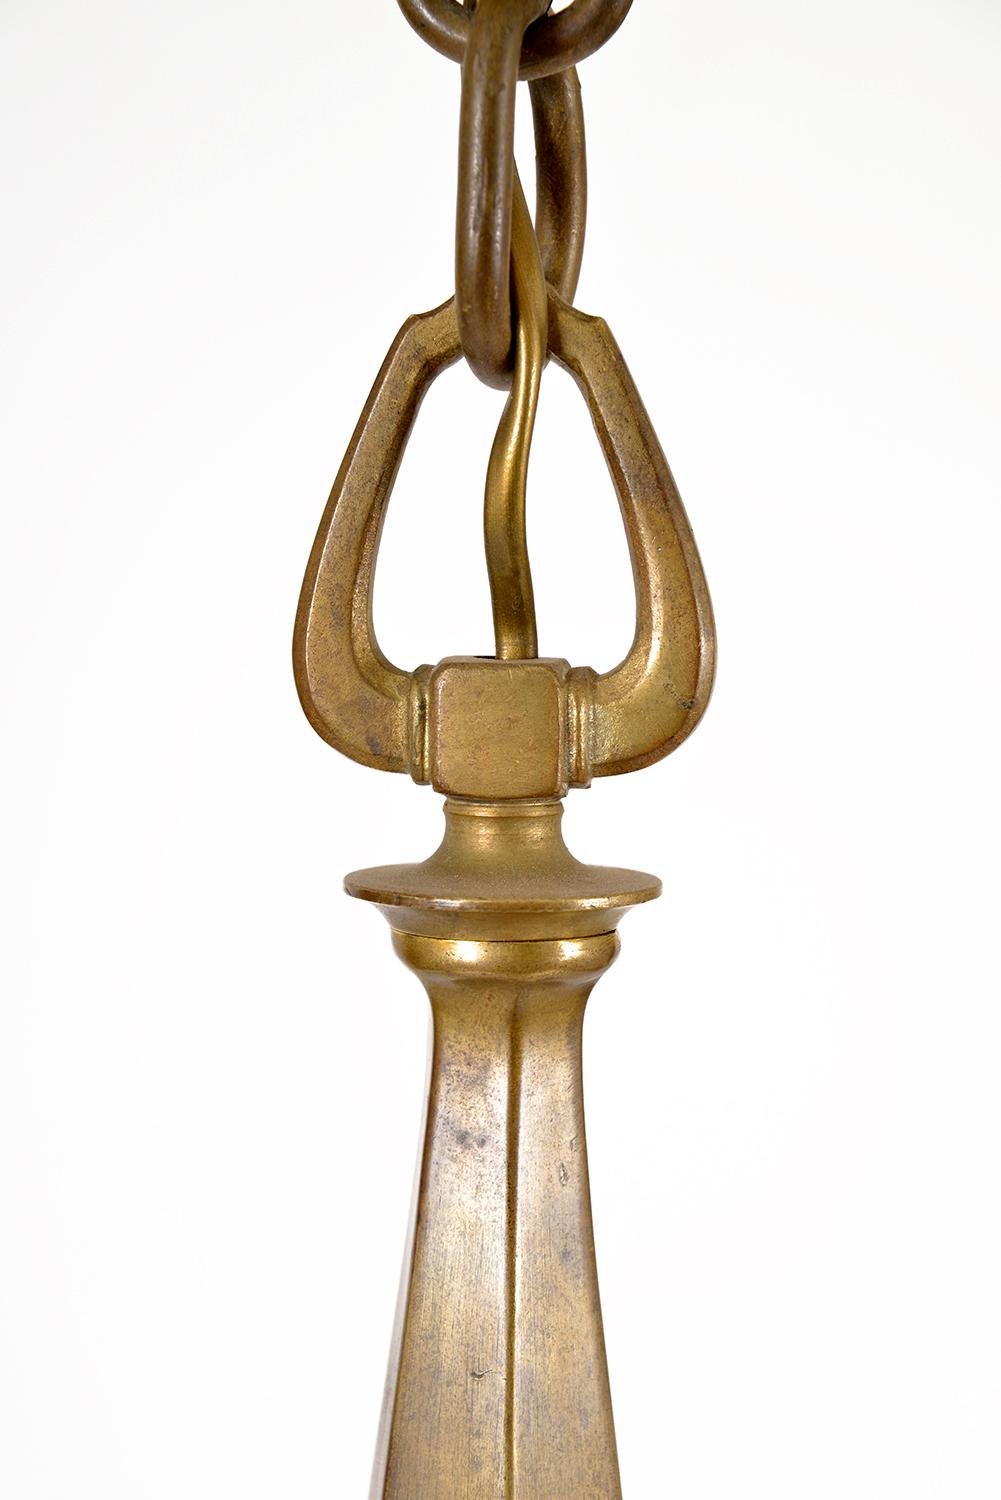 1920s Bohemian Art Deco Jugendstil Solid Brass 6-Arm Ceiling Pendant Chandelier For Sale 1